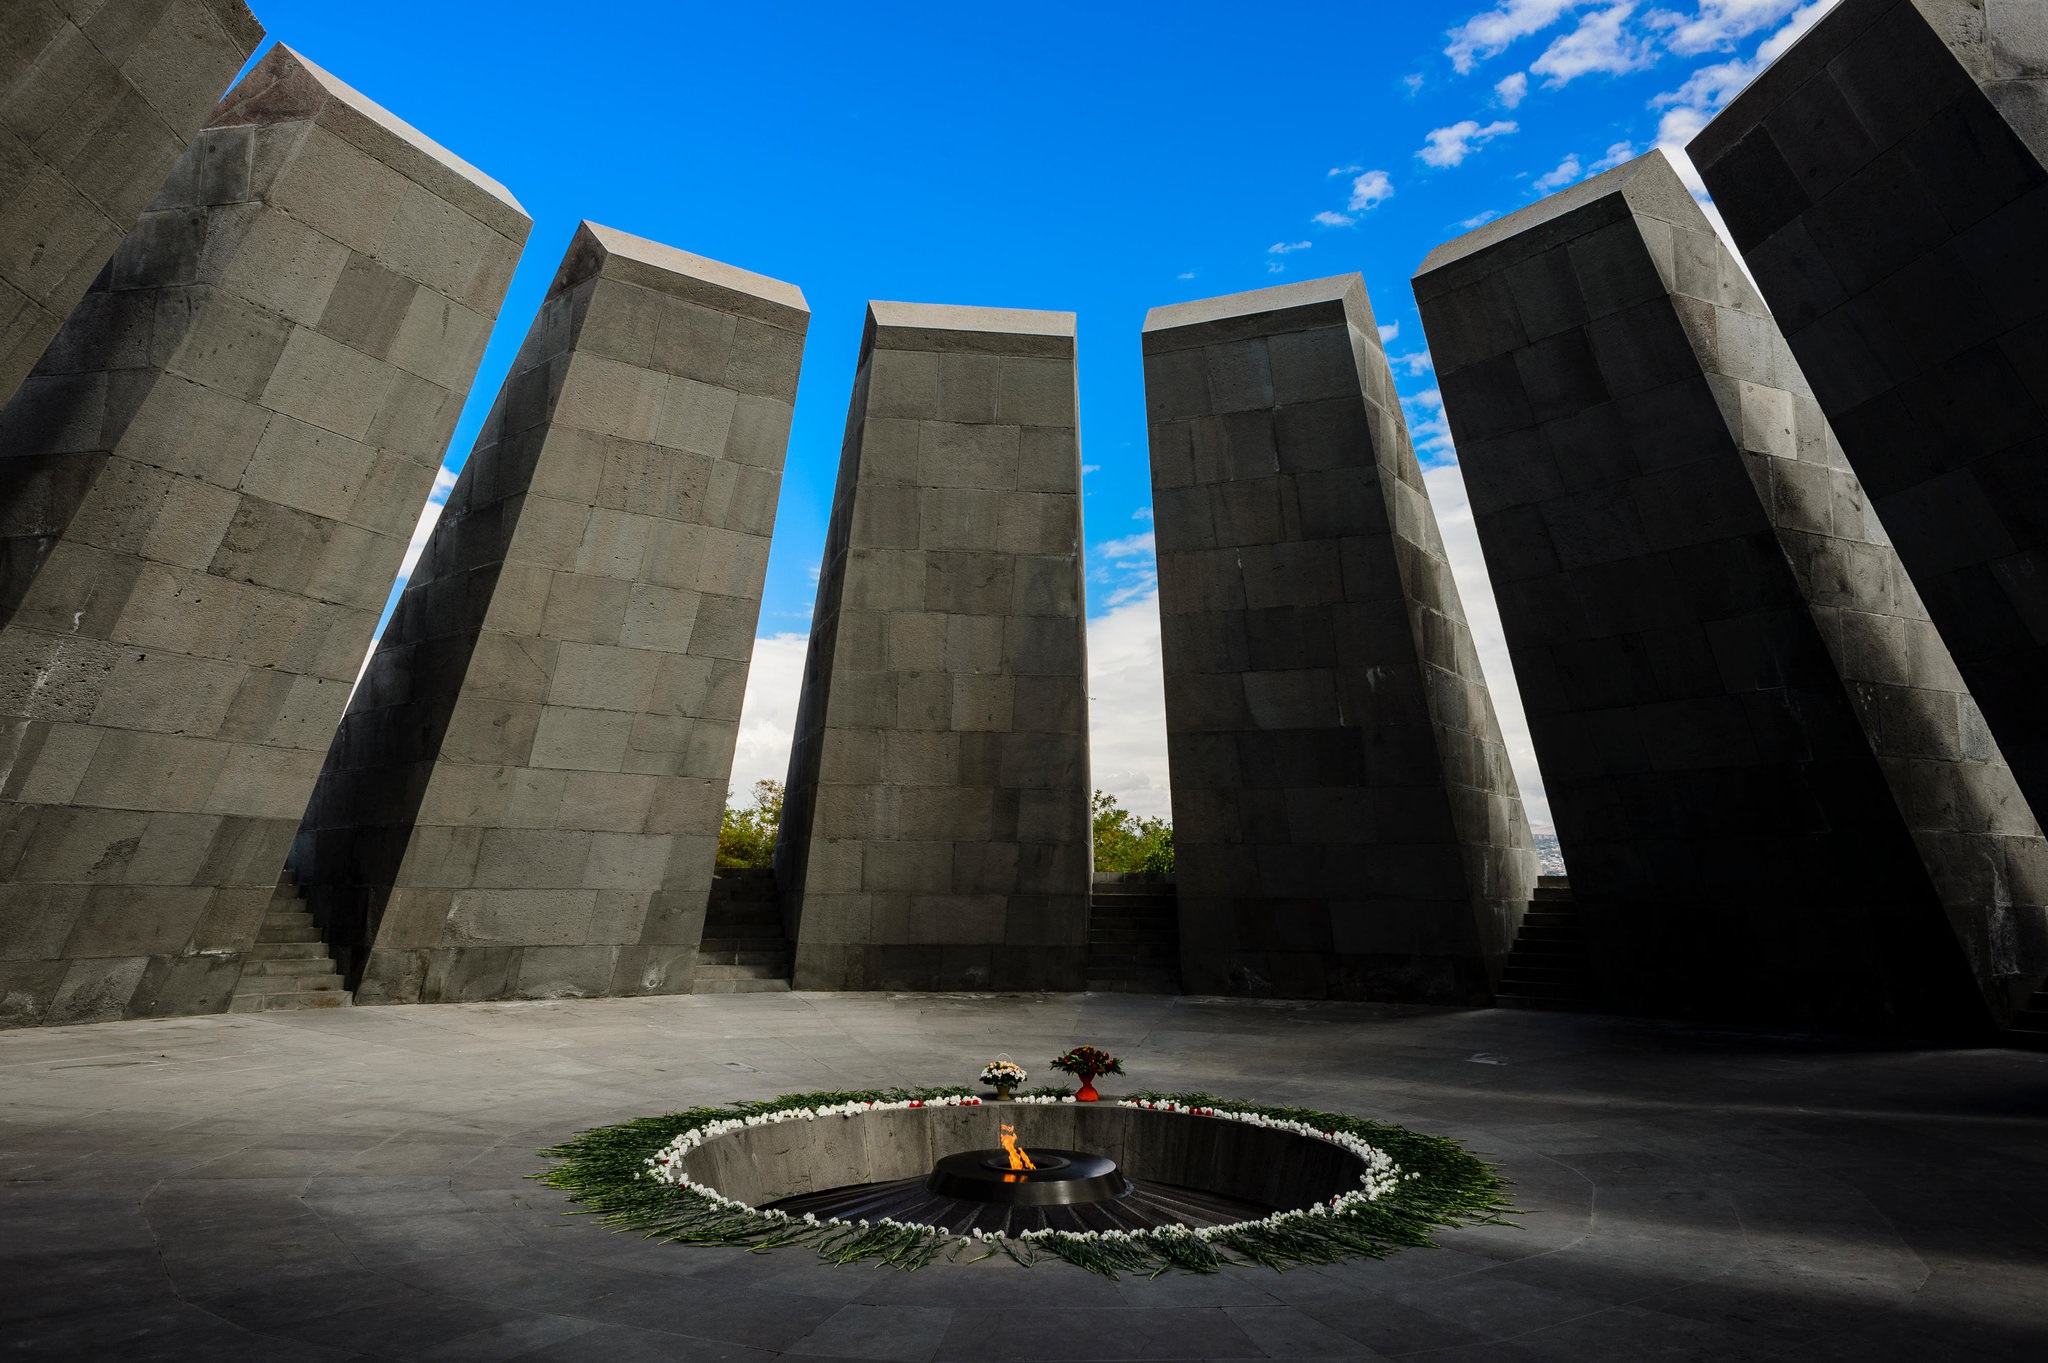 Αρμενία: Βήμα προς την ιστορική αλήθεια η αμερικανική αναγνώριση της Γενοκτονίας